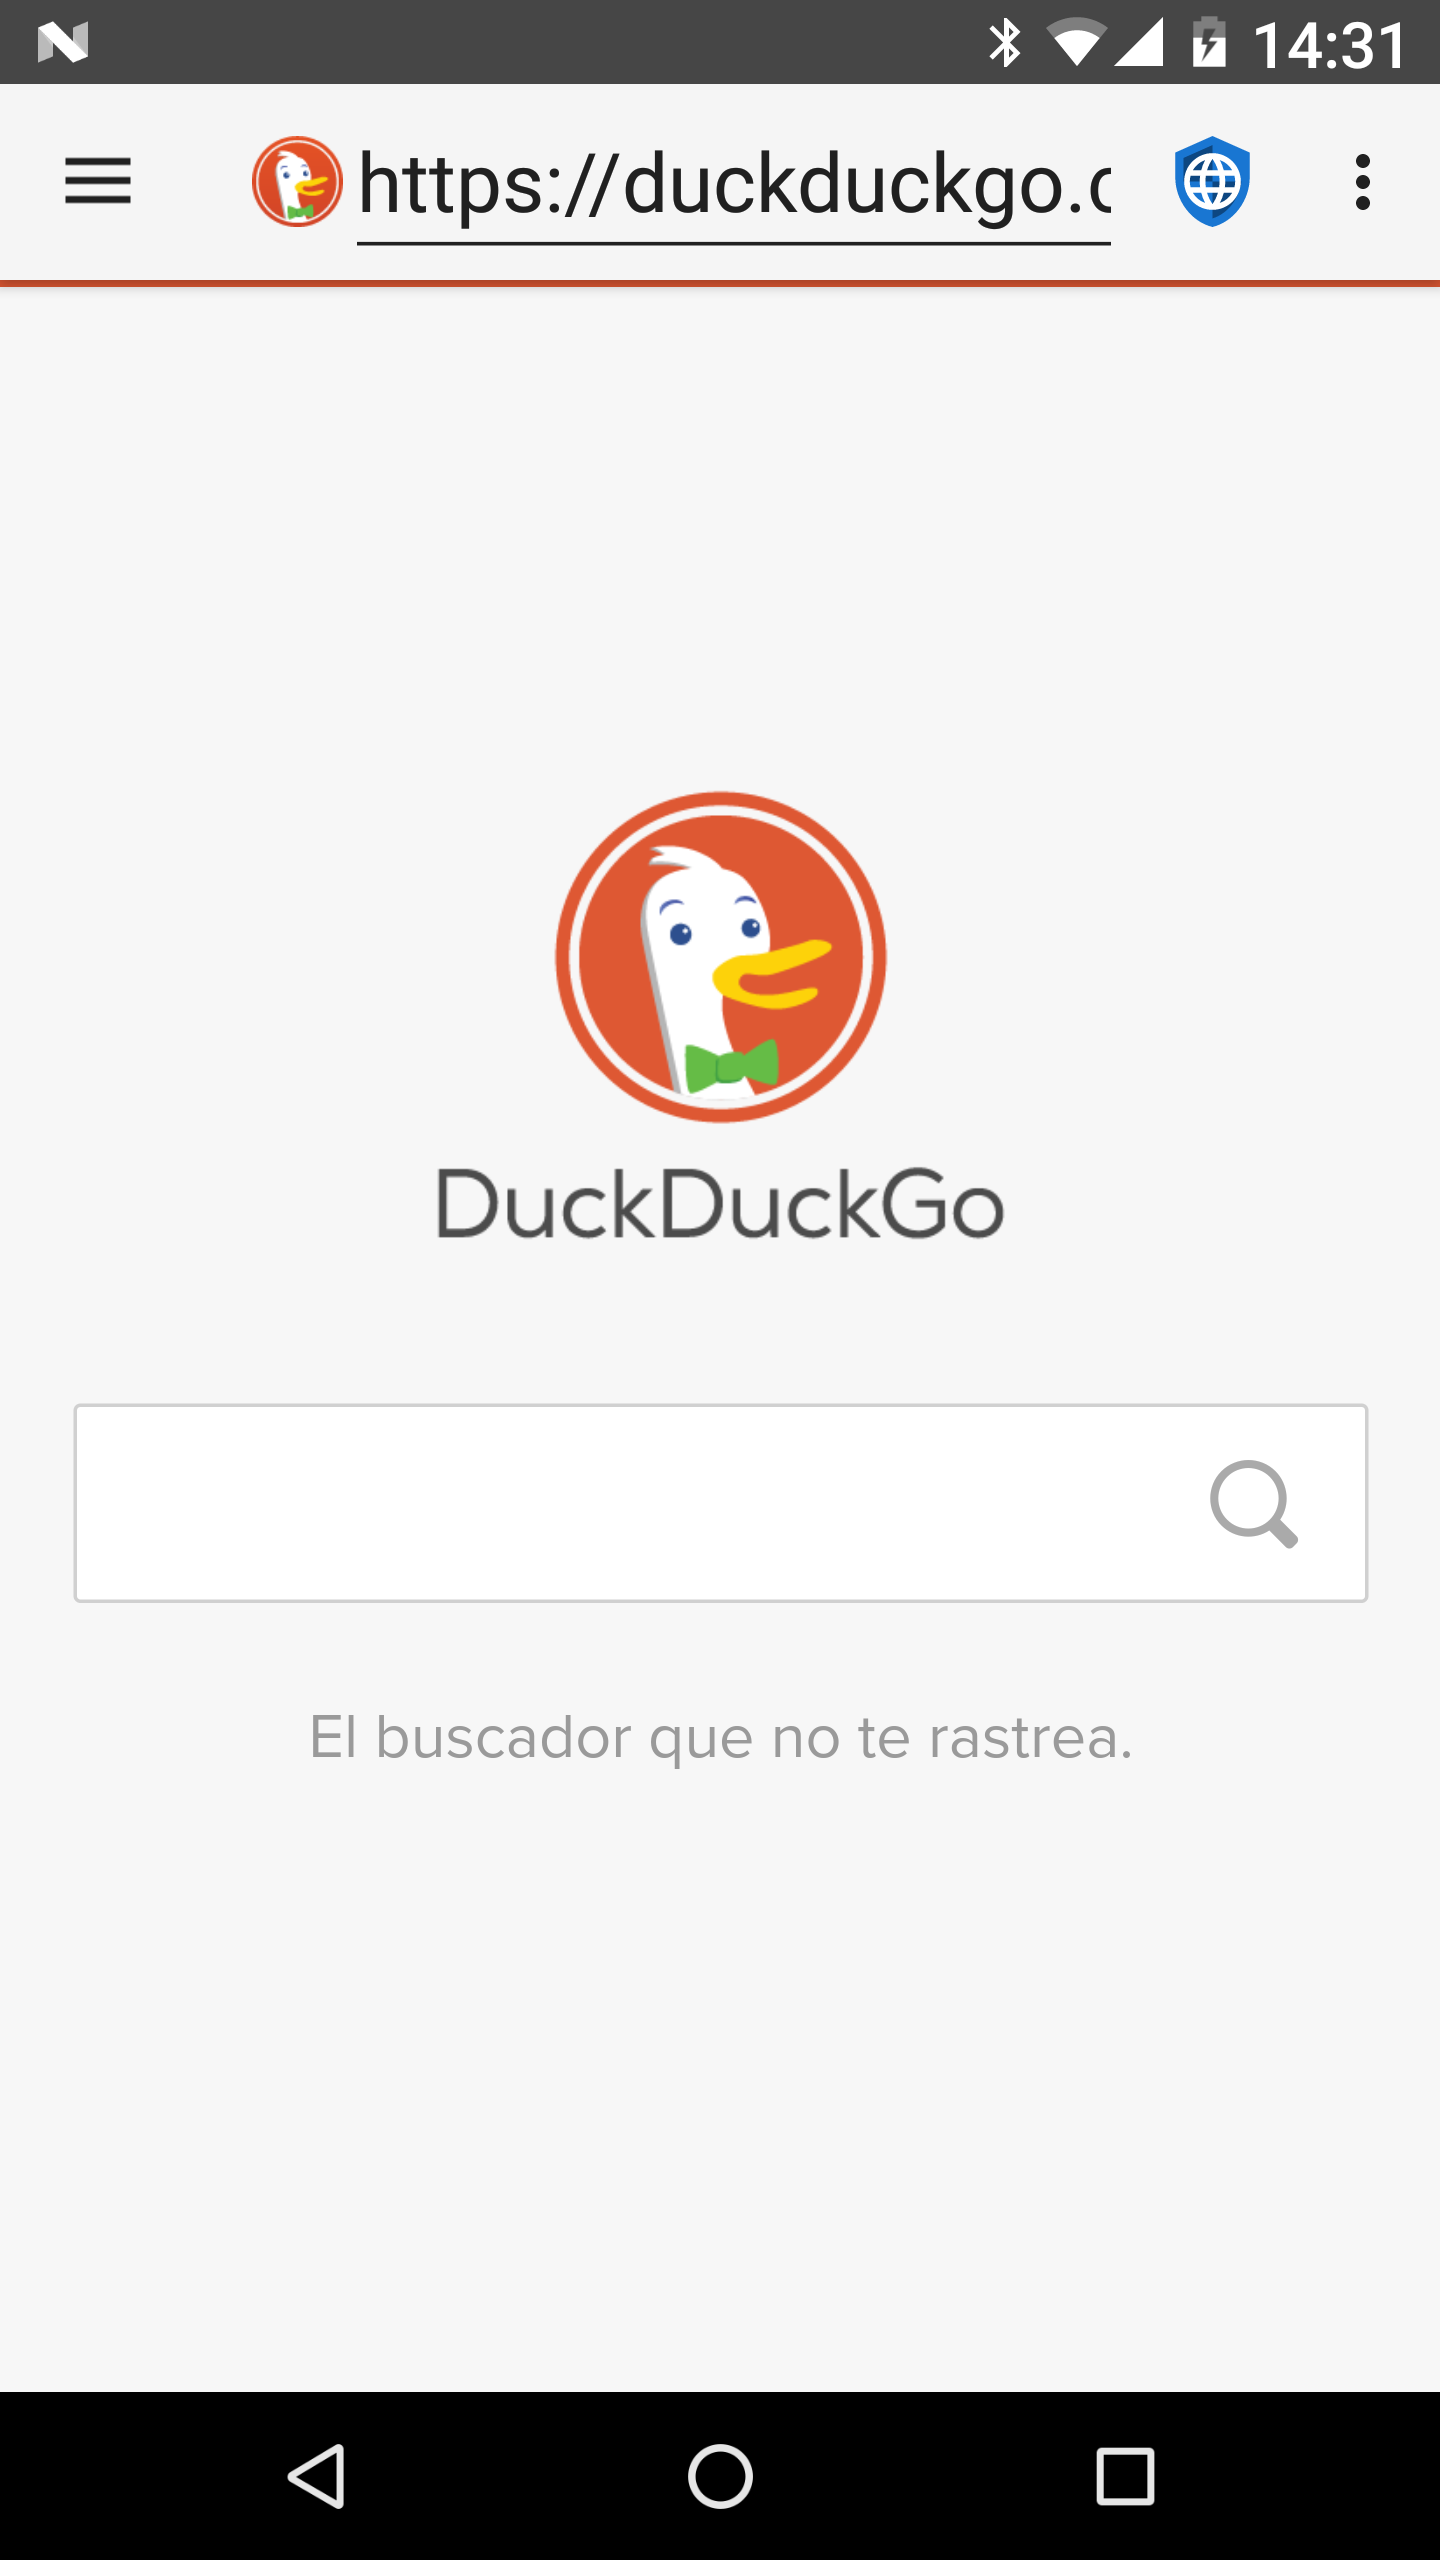 01 - Duck Duck Go - es.png